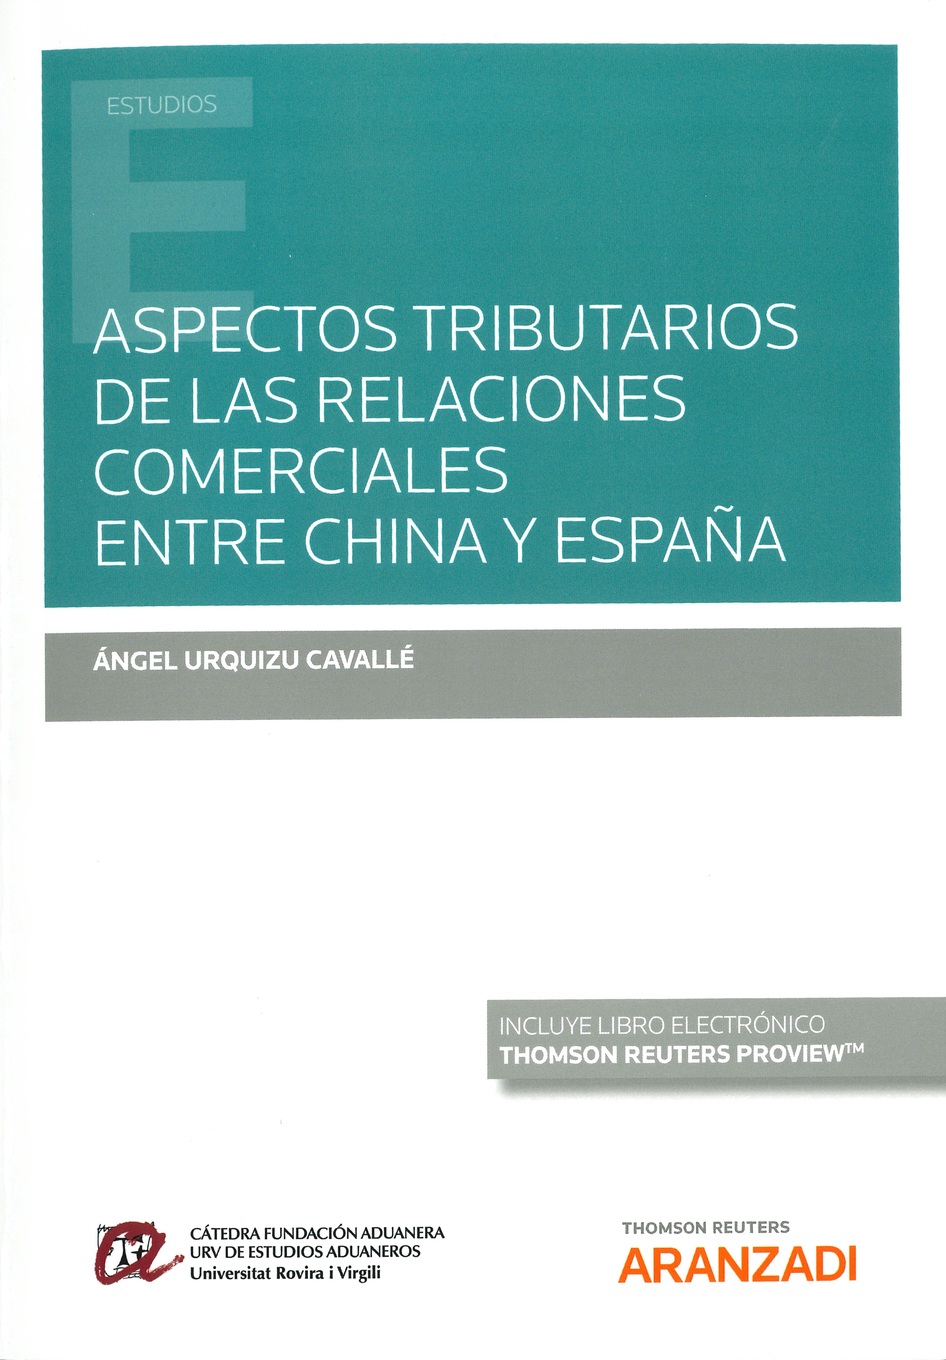 Imagen de portada del libro Aspectos tributarios de la relaciones comerciales entre China y España